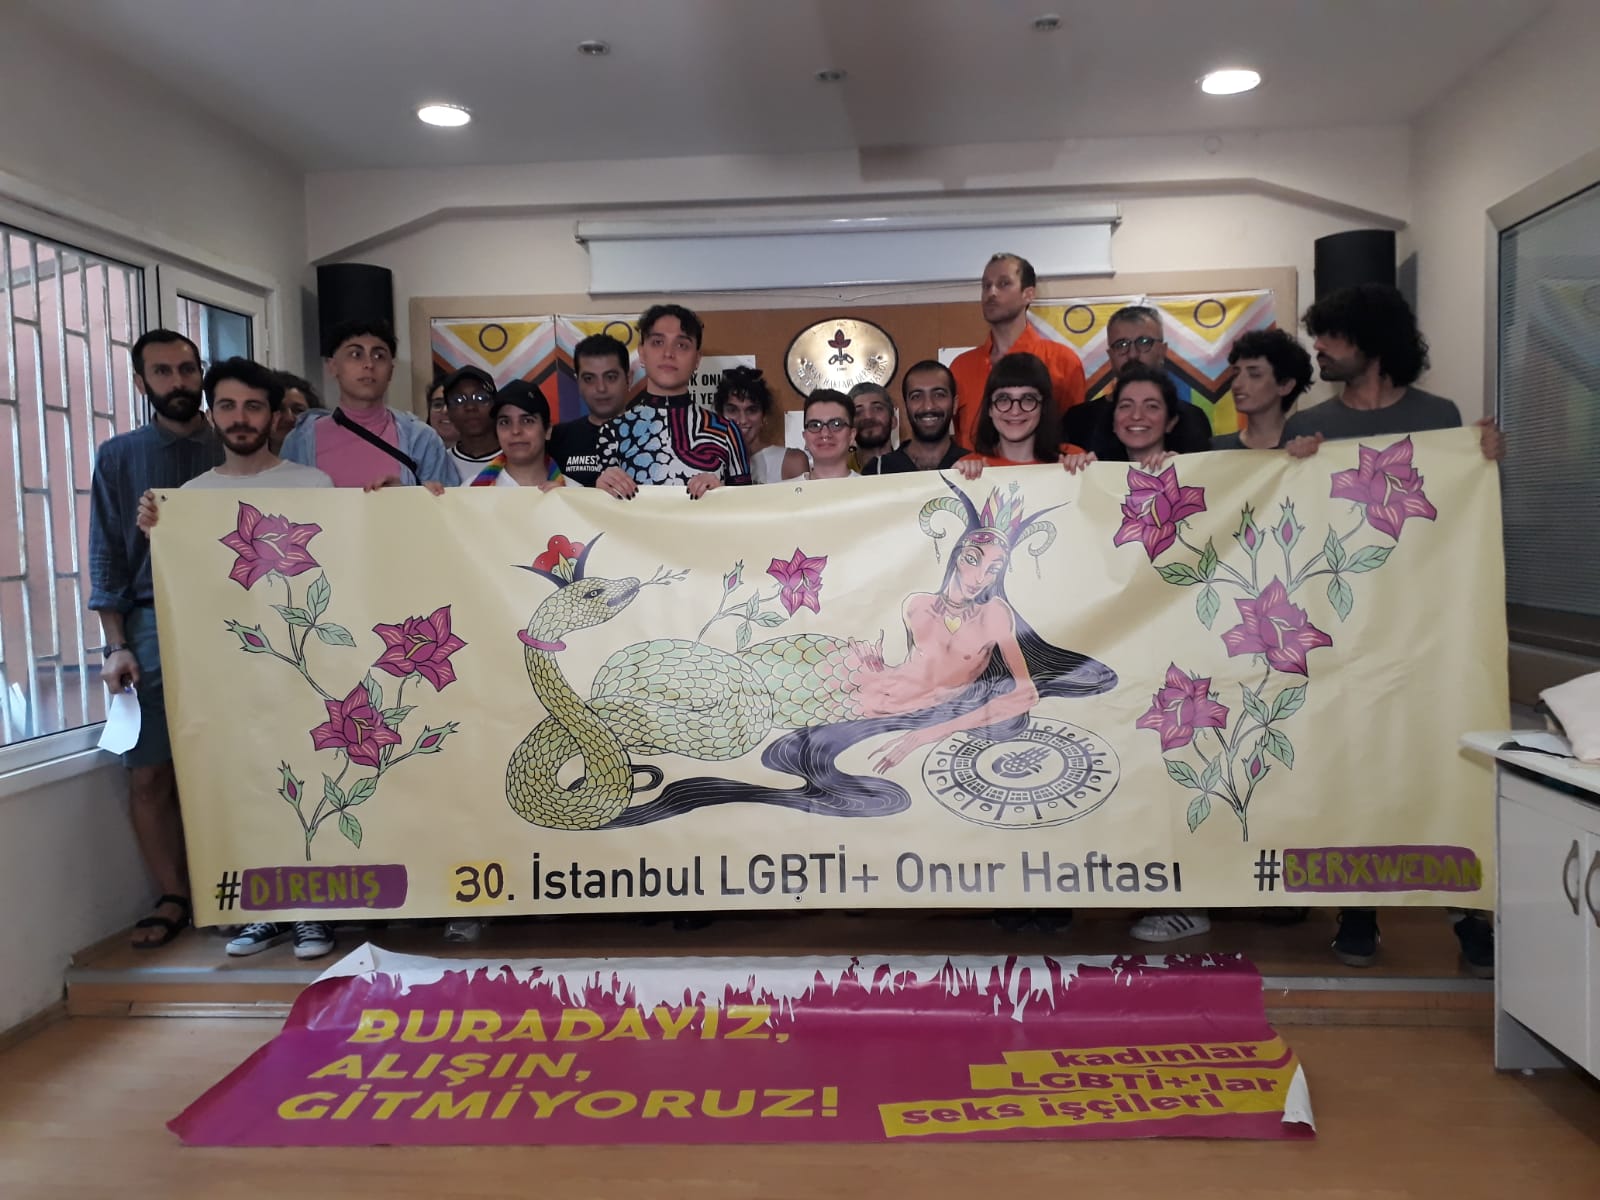 İstanbul LGBTİ+ Onur Haftası Komitesi: Her alanda direnmeye, yaşam hakkımızı savunmaya devam edeceğiz! | Kaos GL - LGBTİ+ Haber Portalı Haber